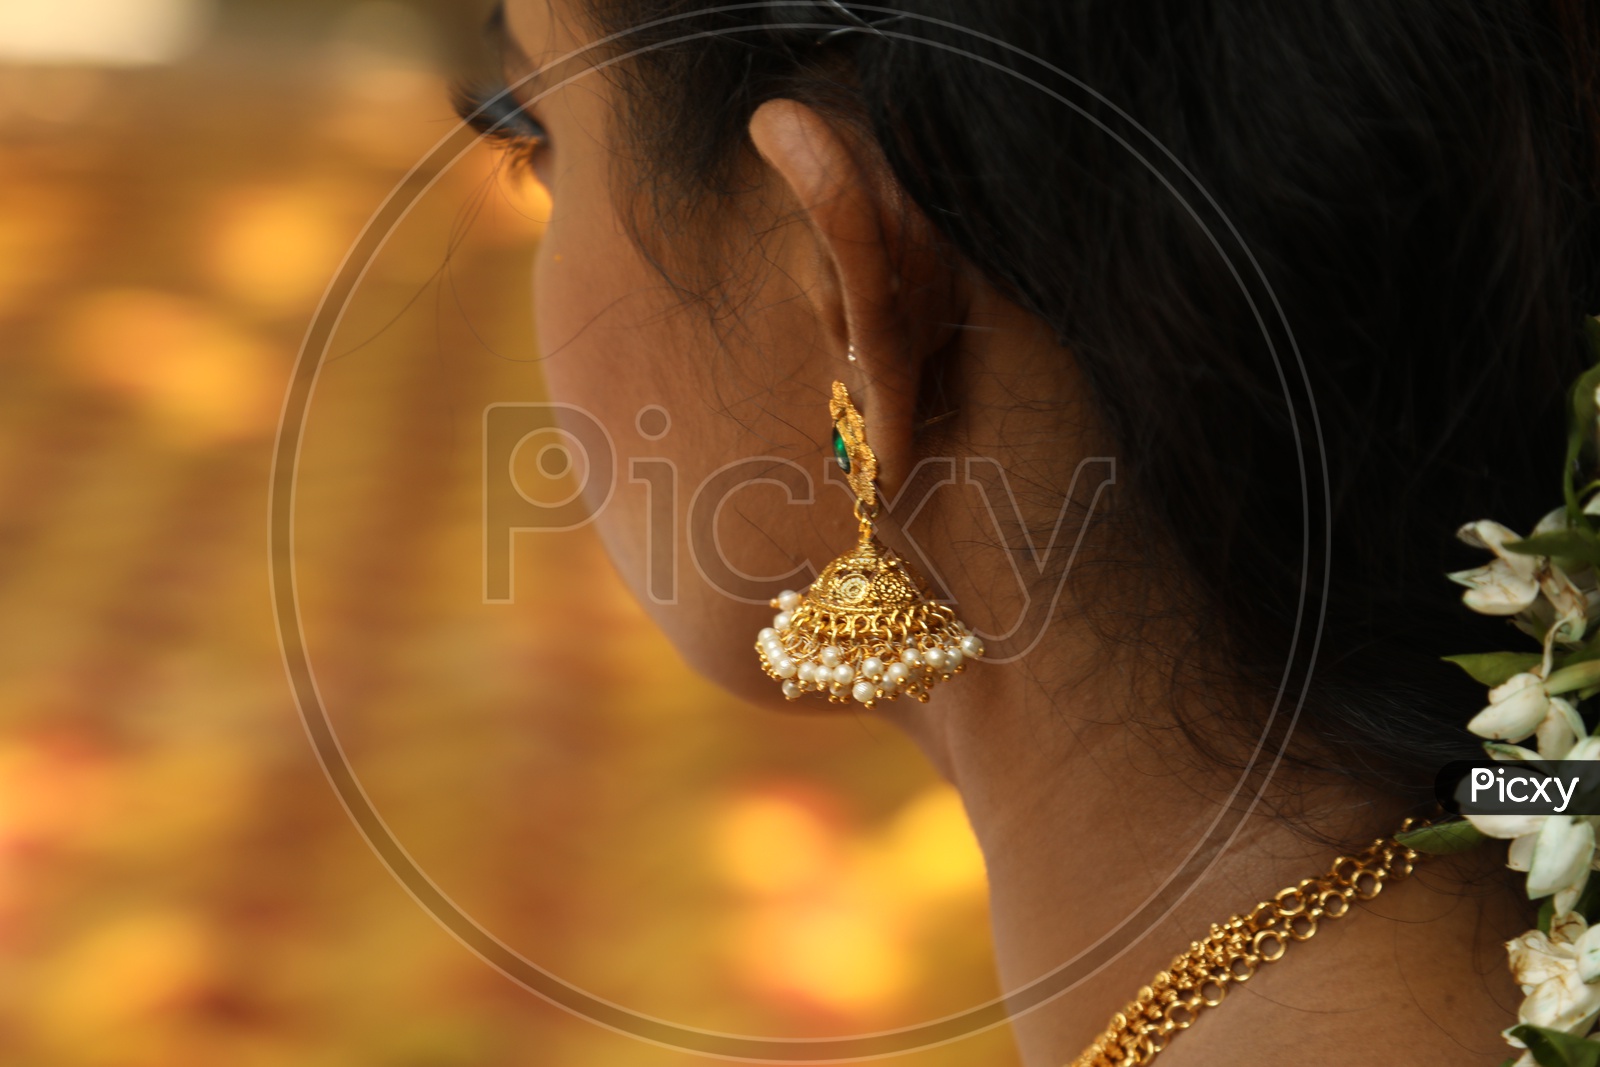 A Woman wearing earrings